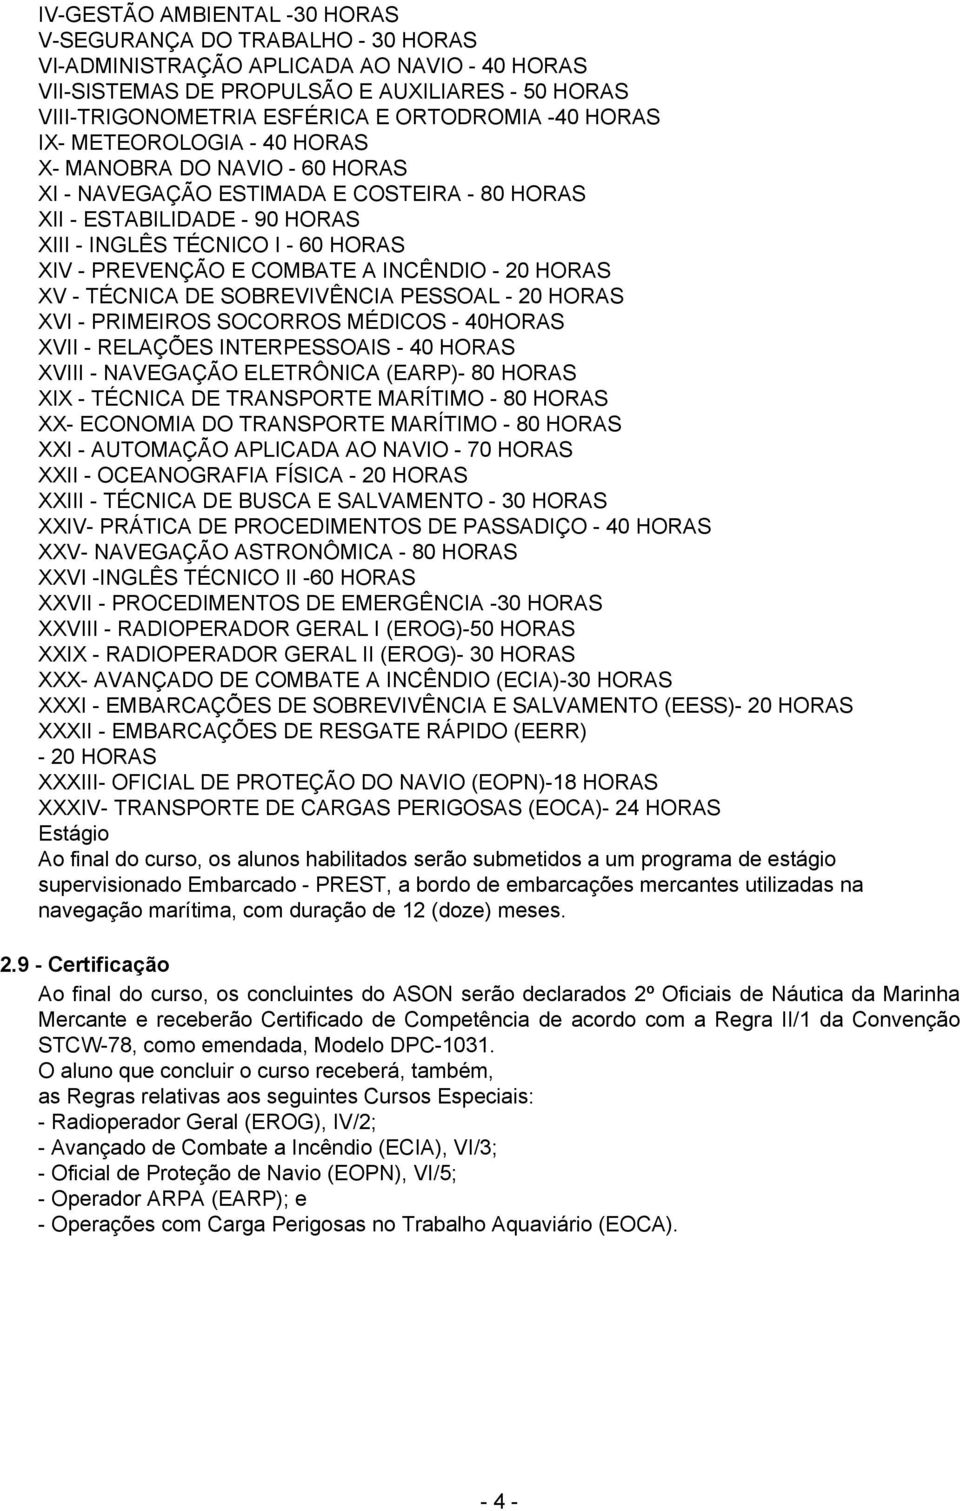 PREVENÇÃO E COMBATE A INCÊNDIO - 20 HORAS XV - TÉCNICA DE SOBREVIVÊNCIA PESSOAL - 20 HORAS XVI - PRIMEIROS SOCORROS MÉDICOS - 40HORAS XVII - RELAÇÕES INTERPESSOAIS - 40 HORAS XVIII - NAVEGAÇÃO